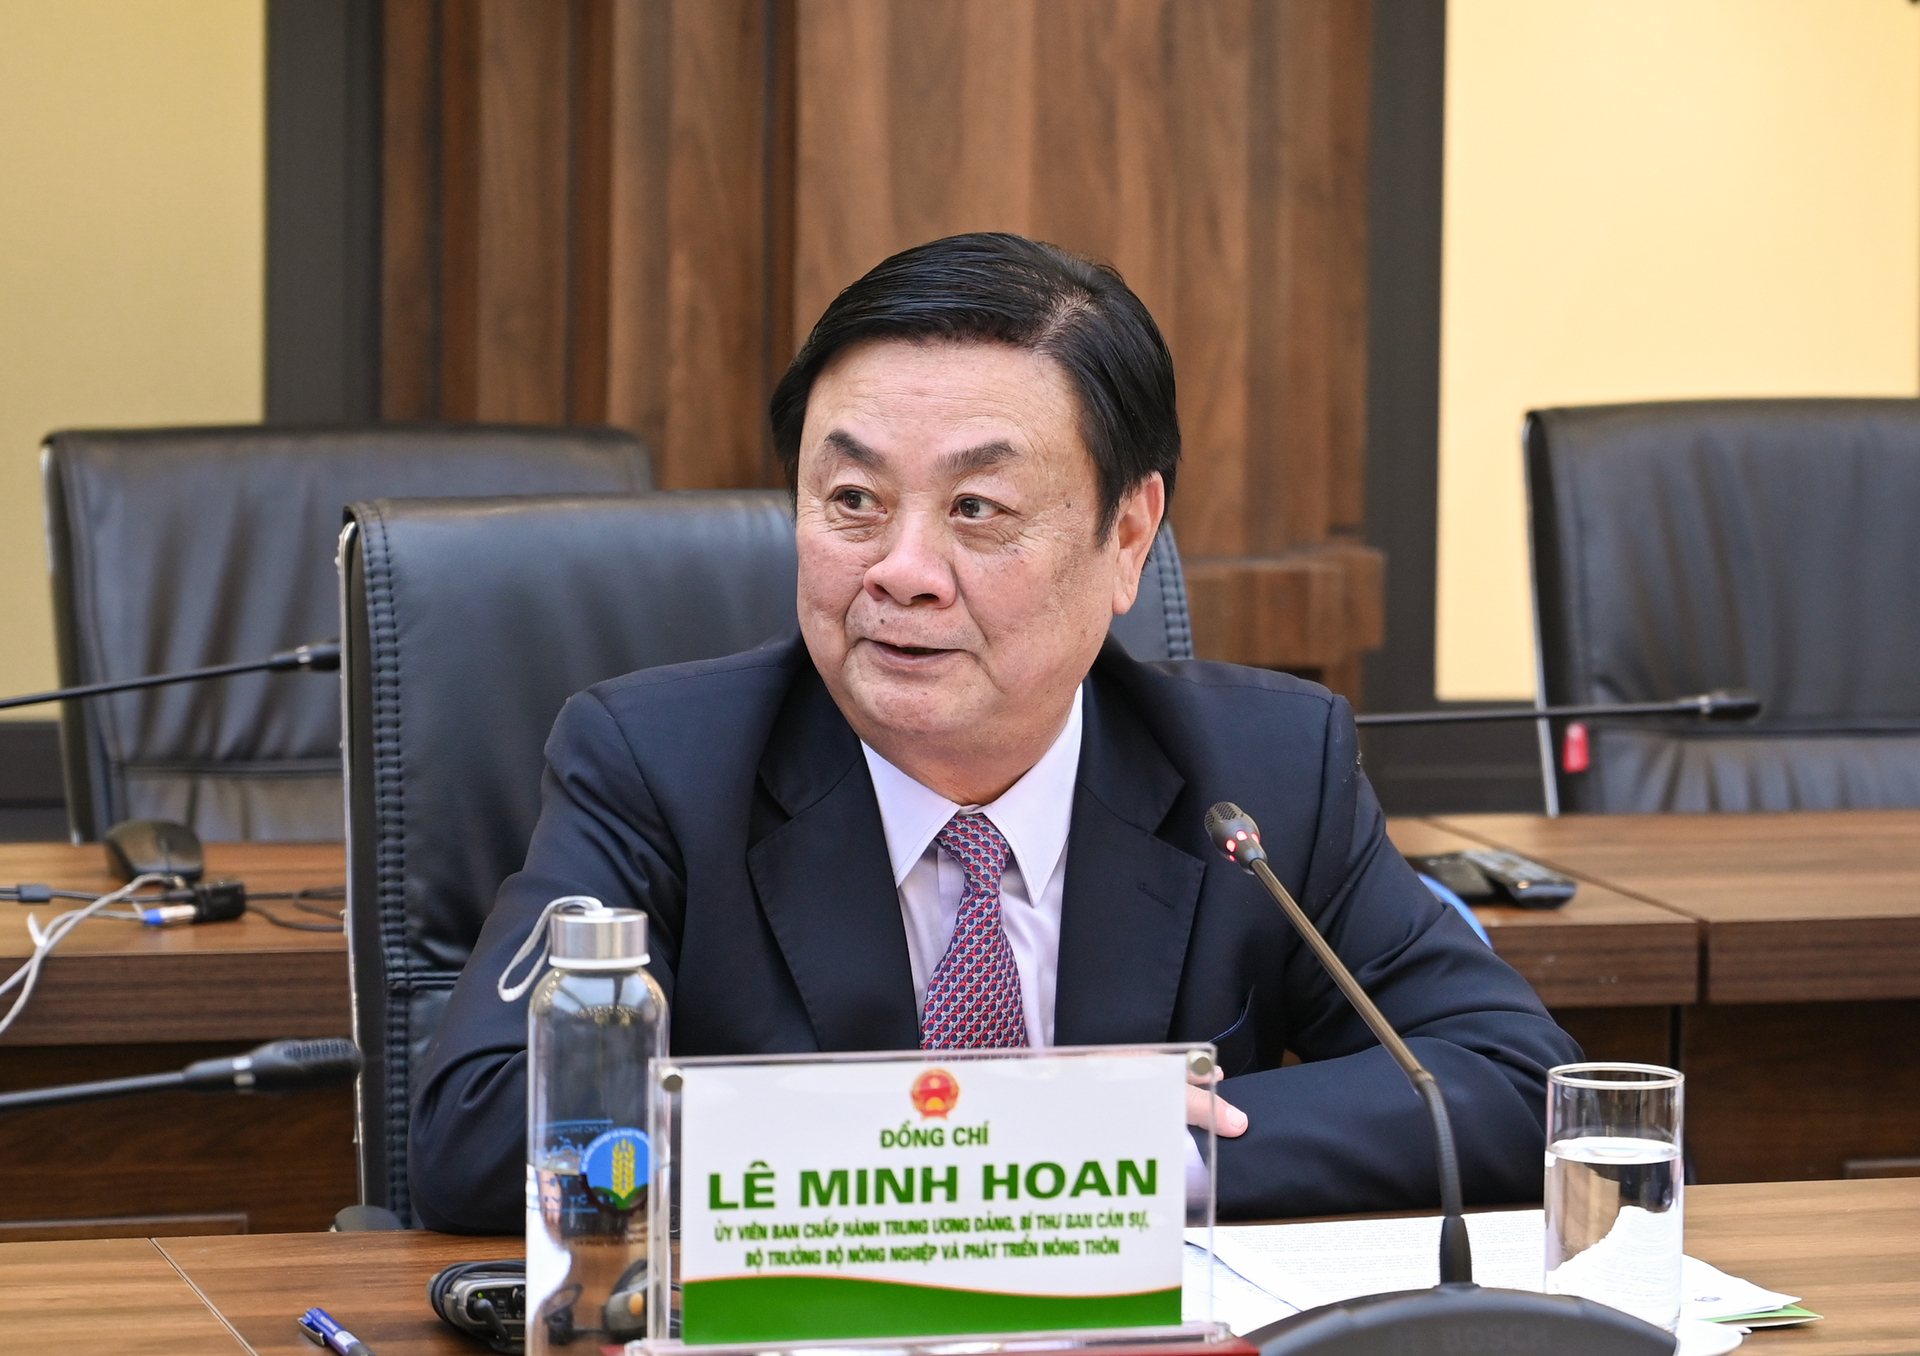 Bộ trưởng Lê Minh Hoan phát biểu tại buổi làm việc với Liên minh Đối tác Chuyển đổi xanh, ngày 25/7. Ảnh: Quỳnh Chi.